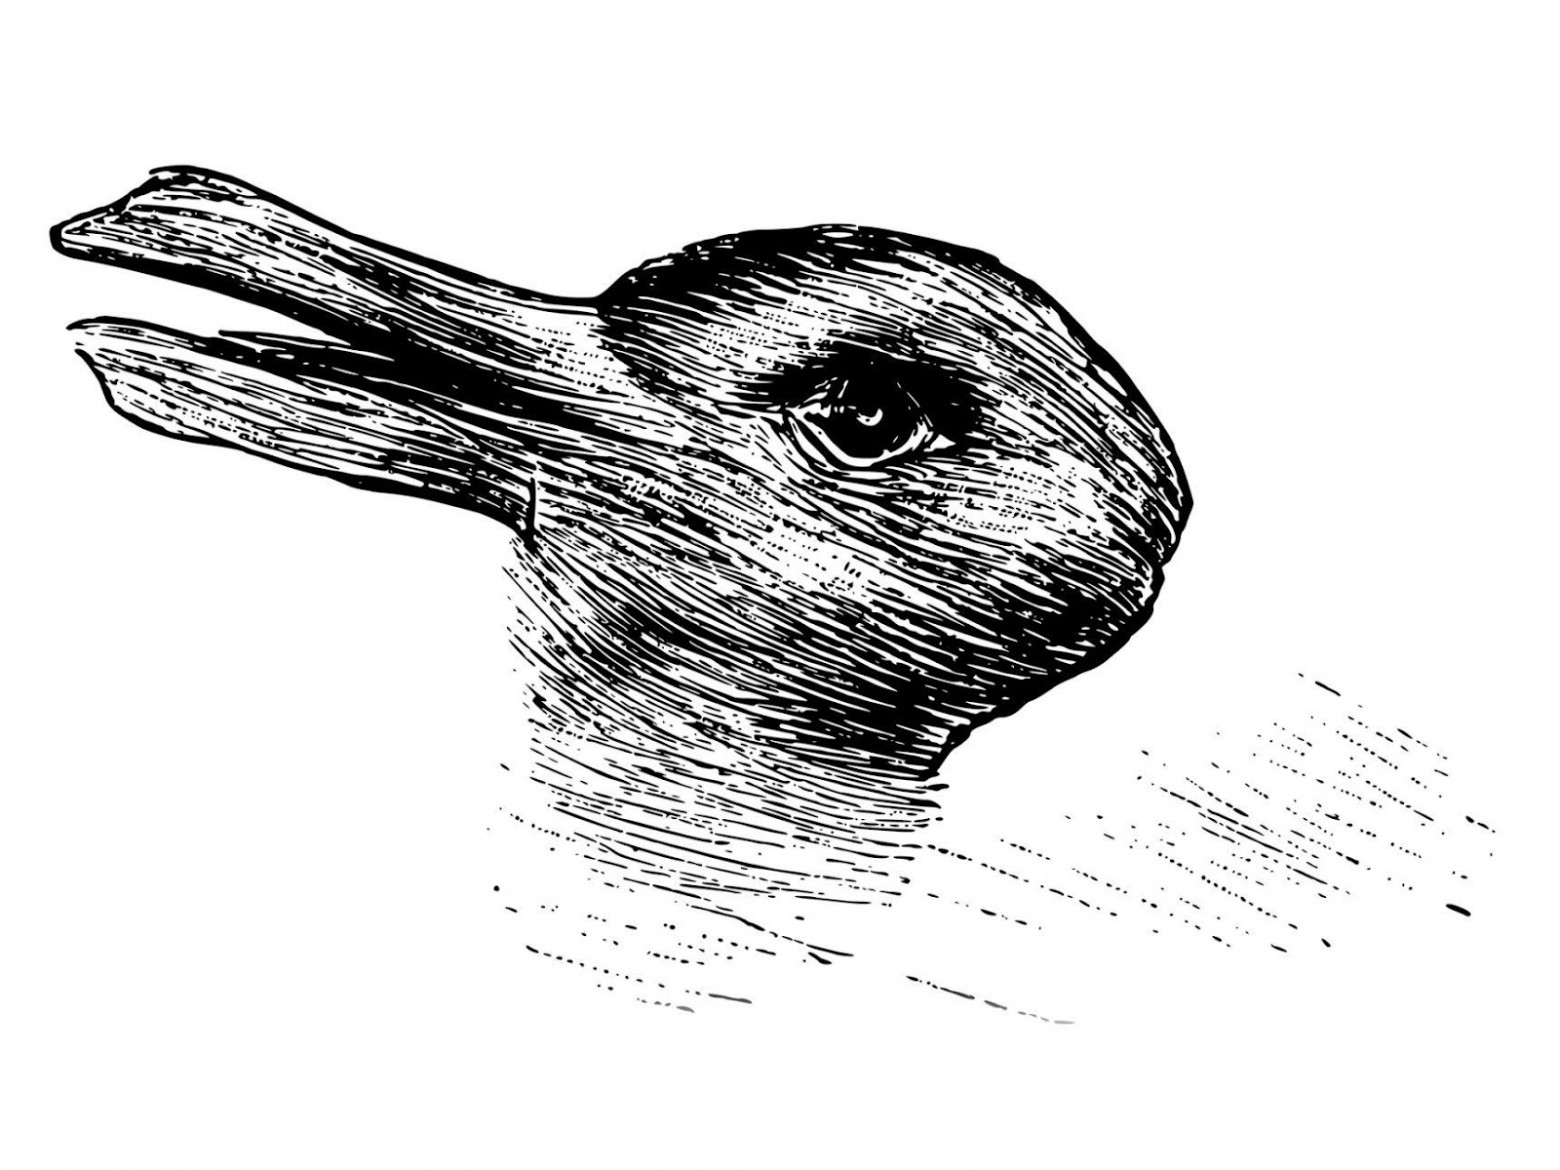 Когнитивные психологи в середине ХХ века использовали это изображение, которое может выглядеть как утка или кролик, чтобы изучать человеческое восприятие.